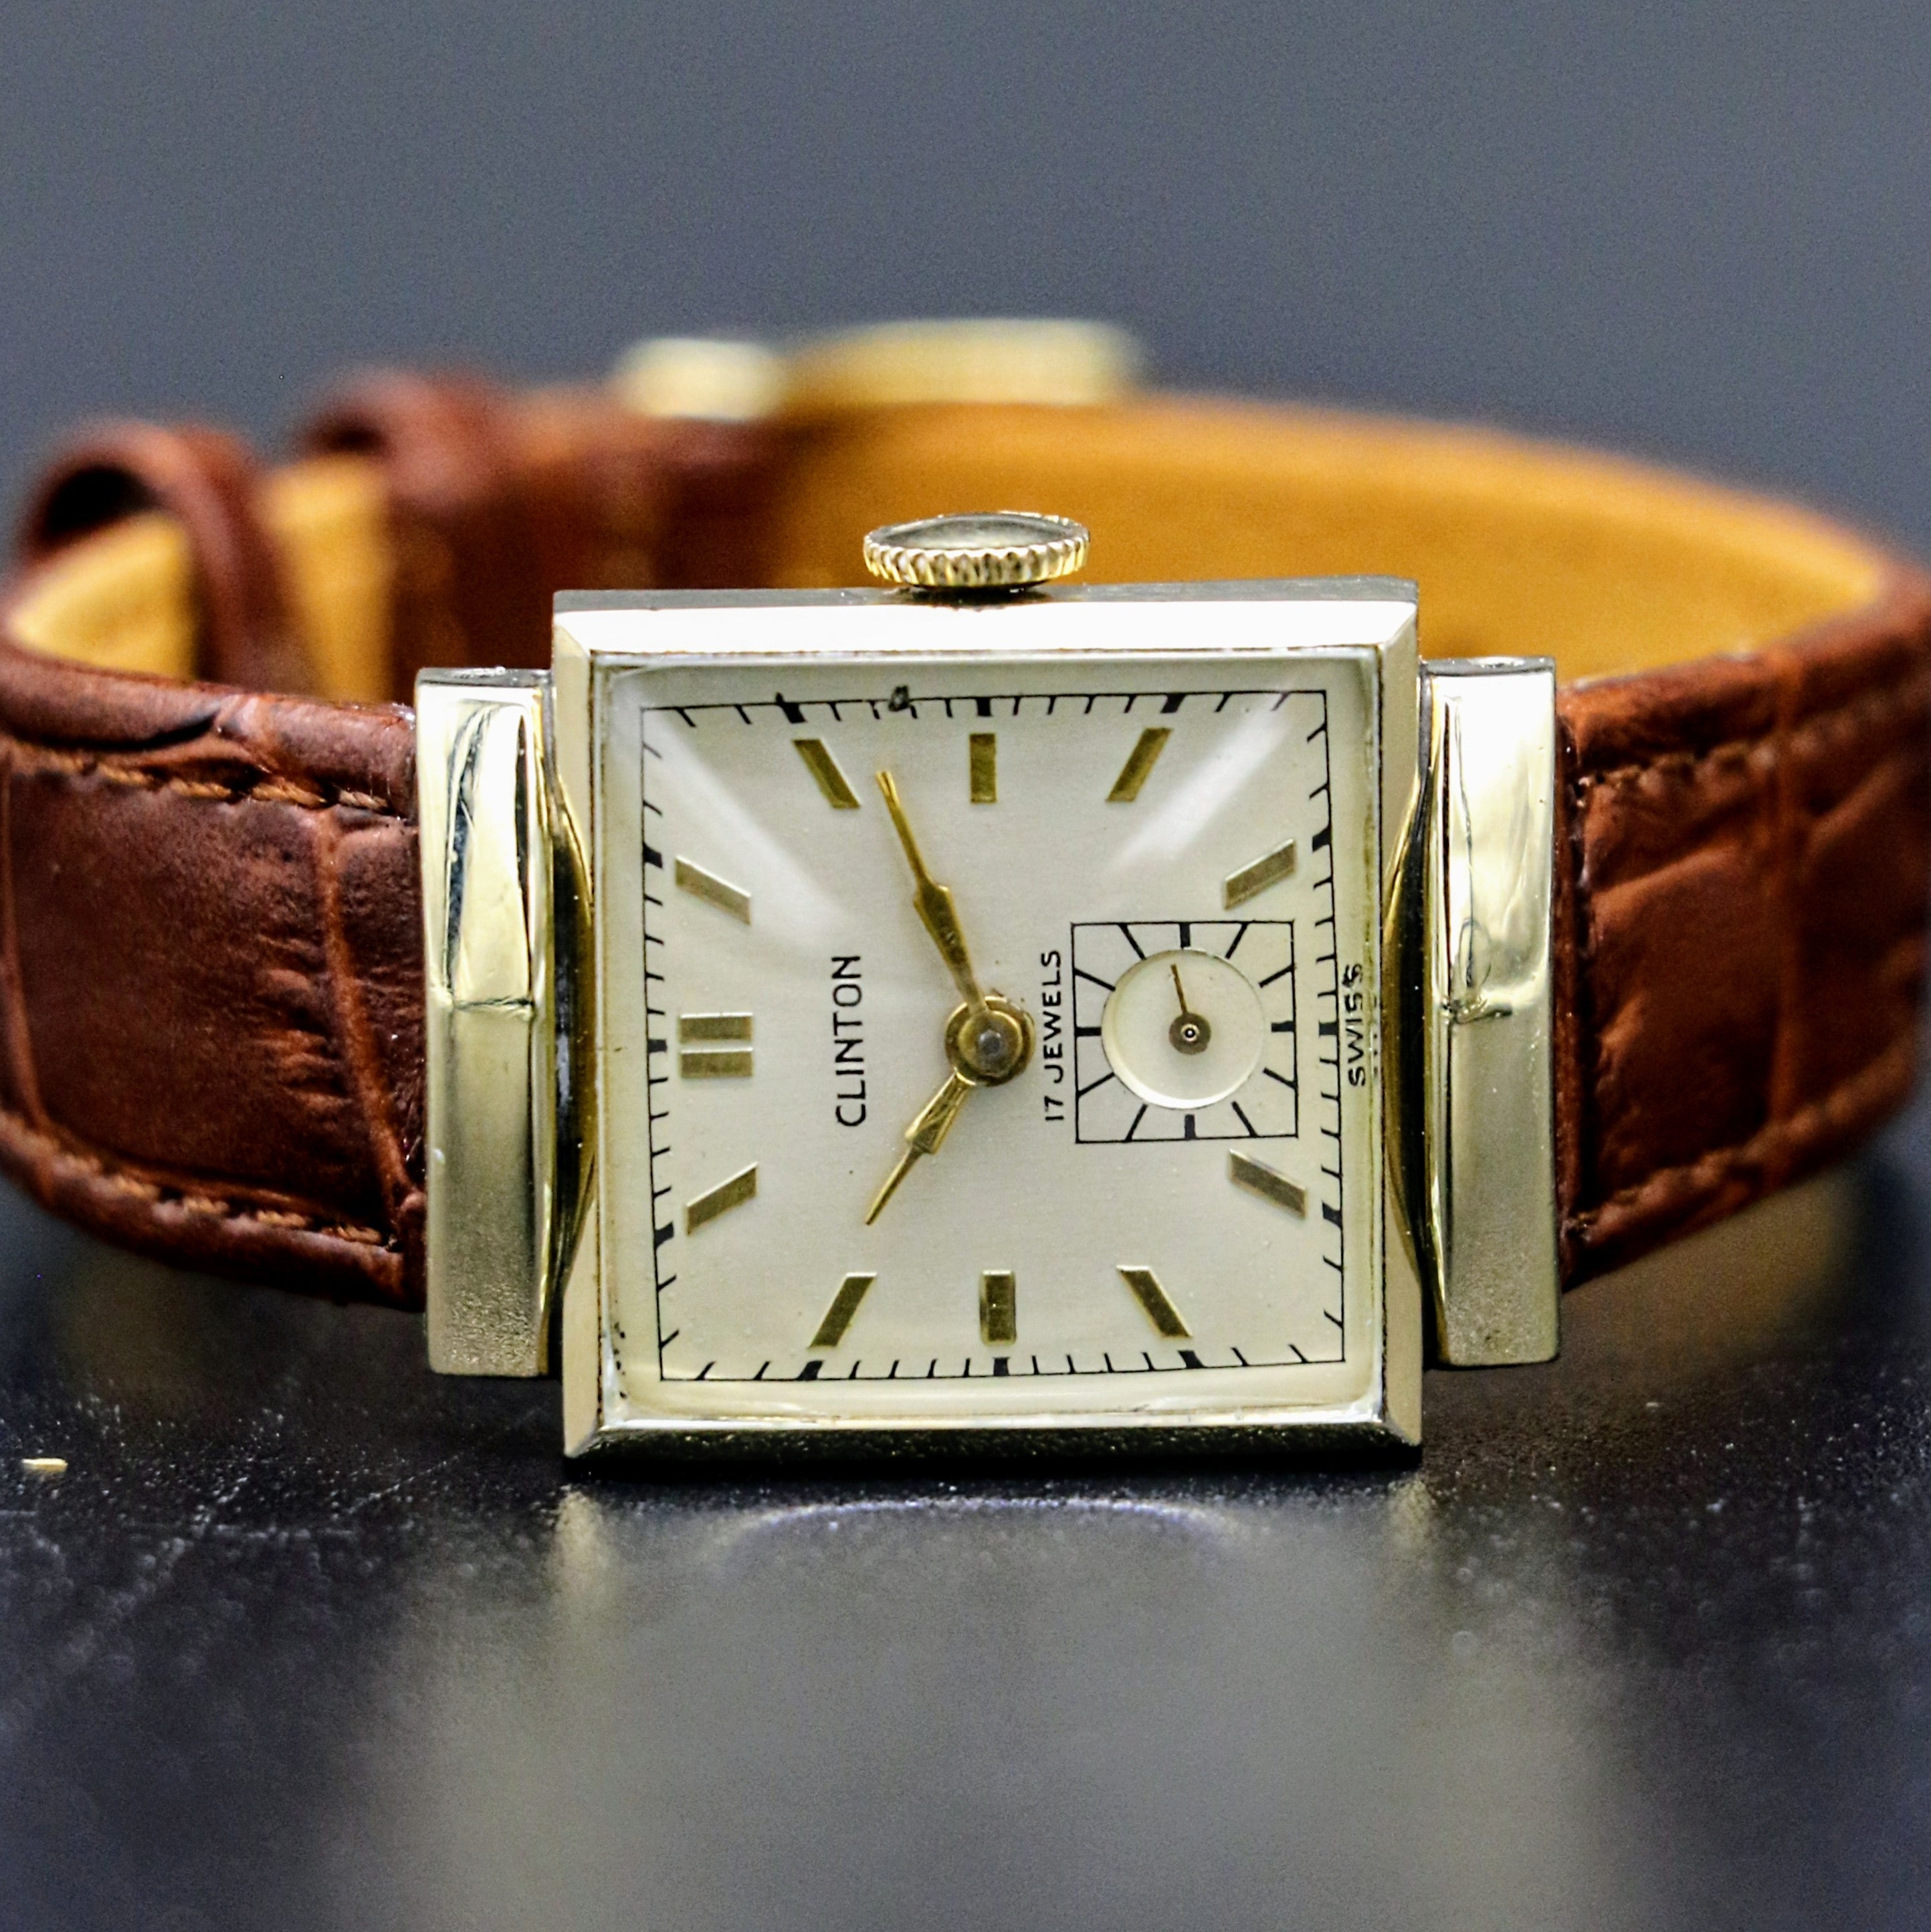 1940's CLINTON Watch 17 Jewels 23mm Fancy Lug Design Vintage Swiss Wristwatch